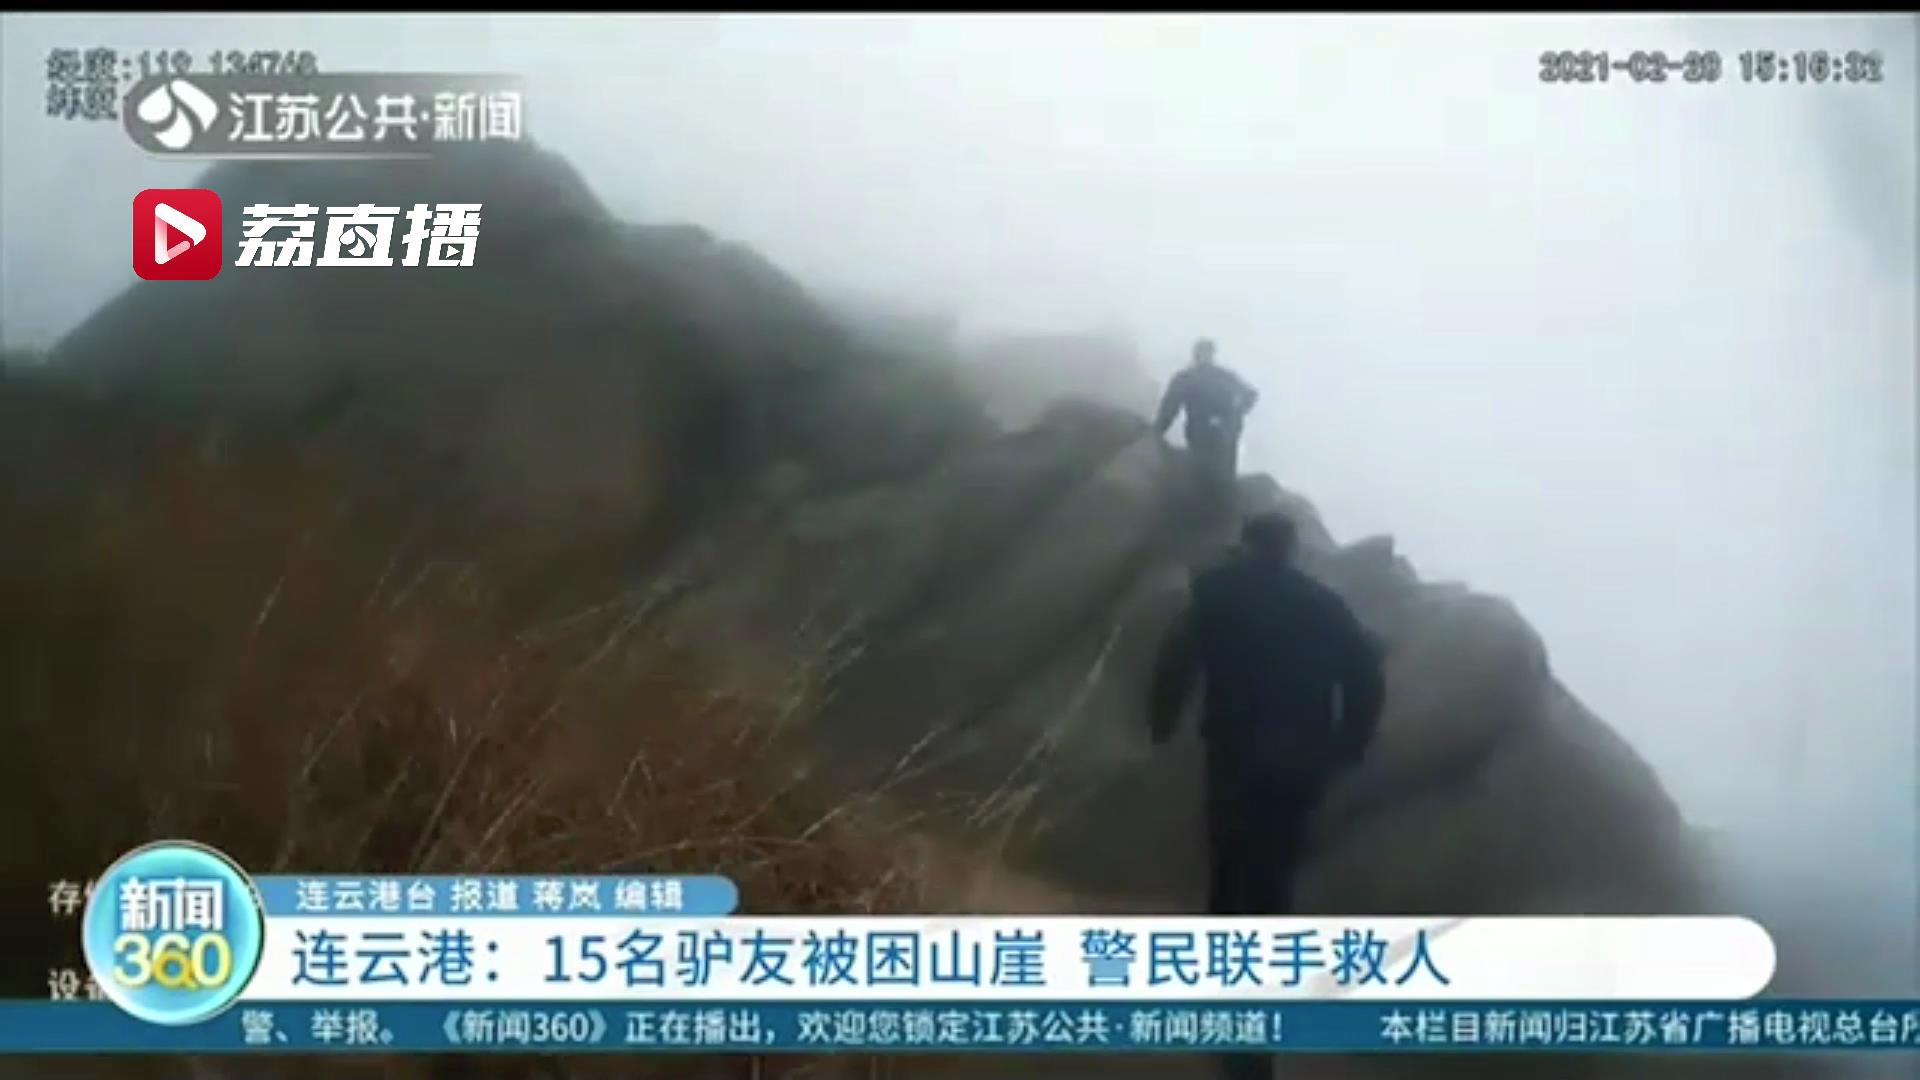 15名驴友被困山崖 连云港警民联手爬到最高峰旁约30米高悬崖救人